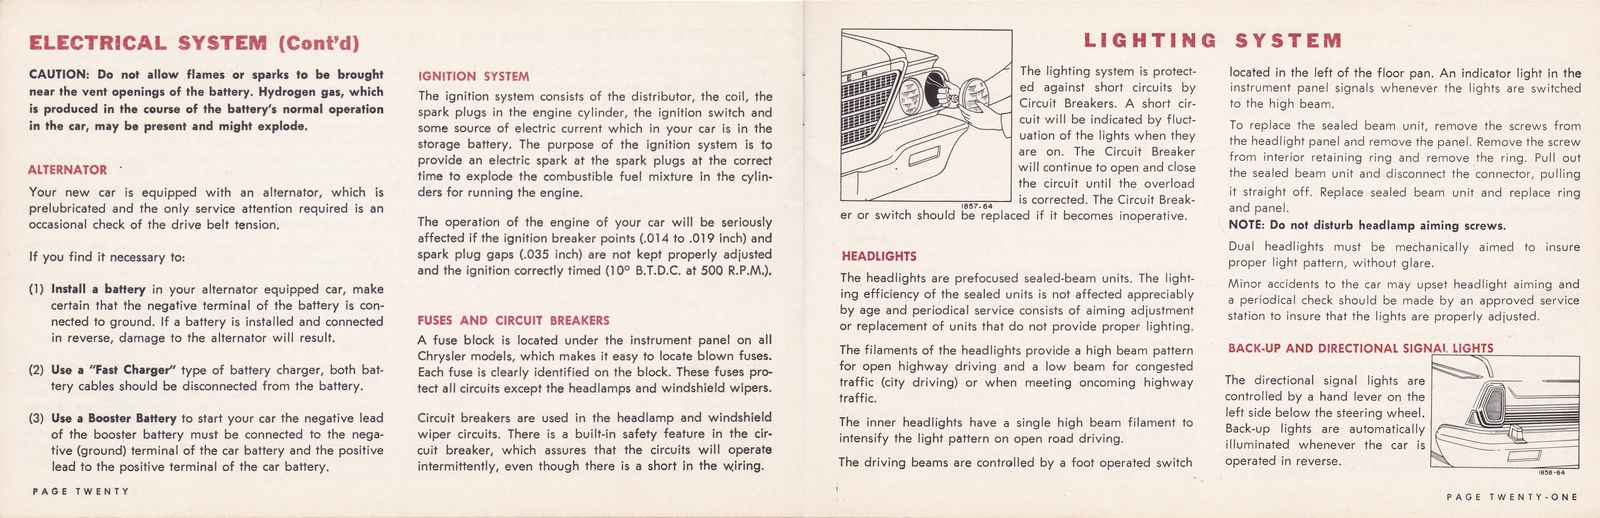 n_1964 Chrysler Owner's Manual (Cdn)-20-21.jpg